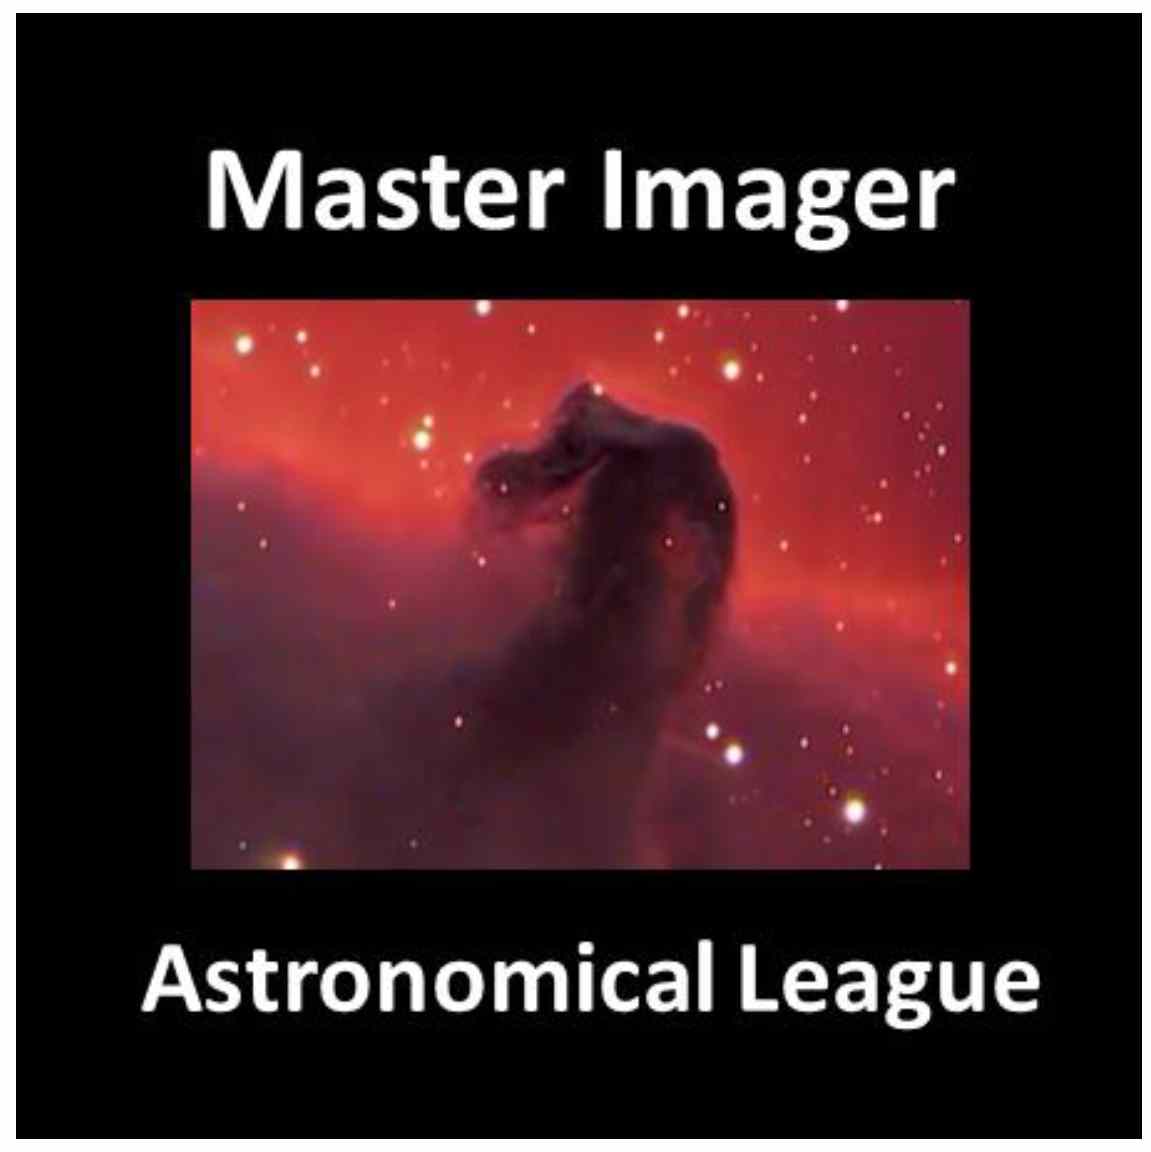 Master Imager Award